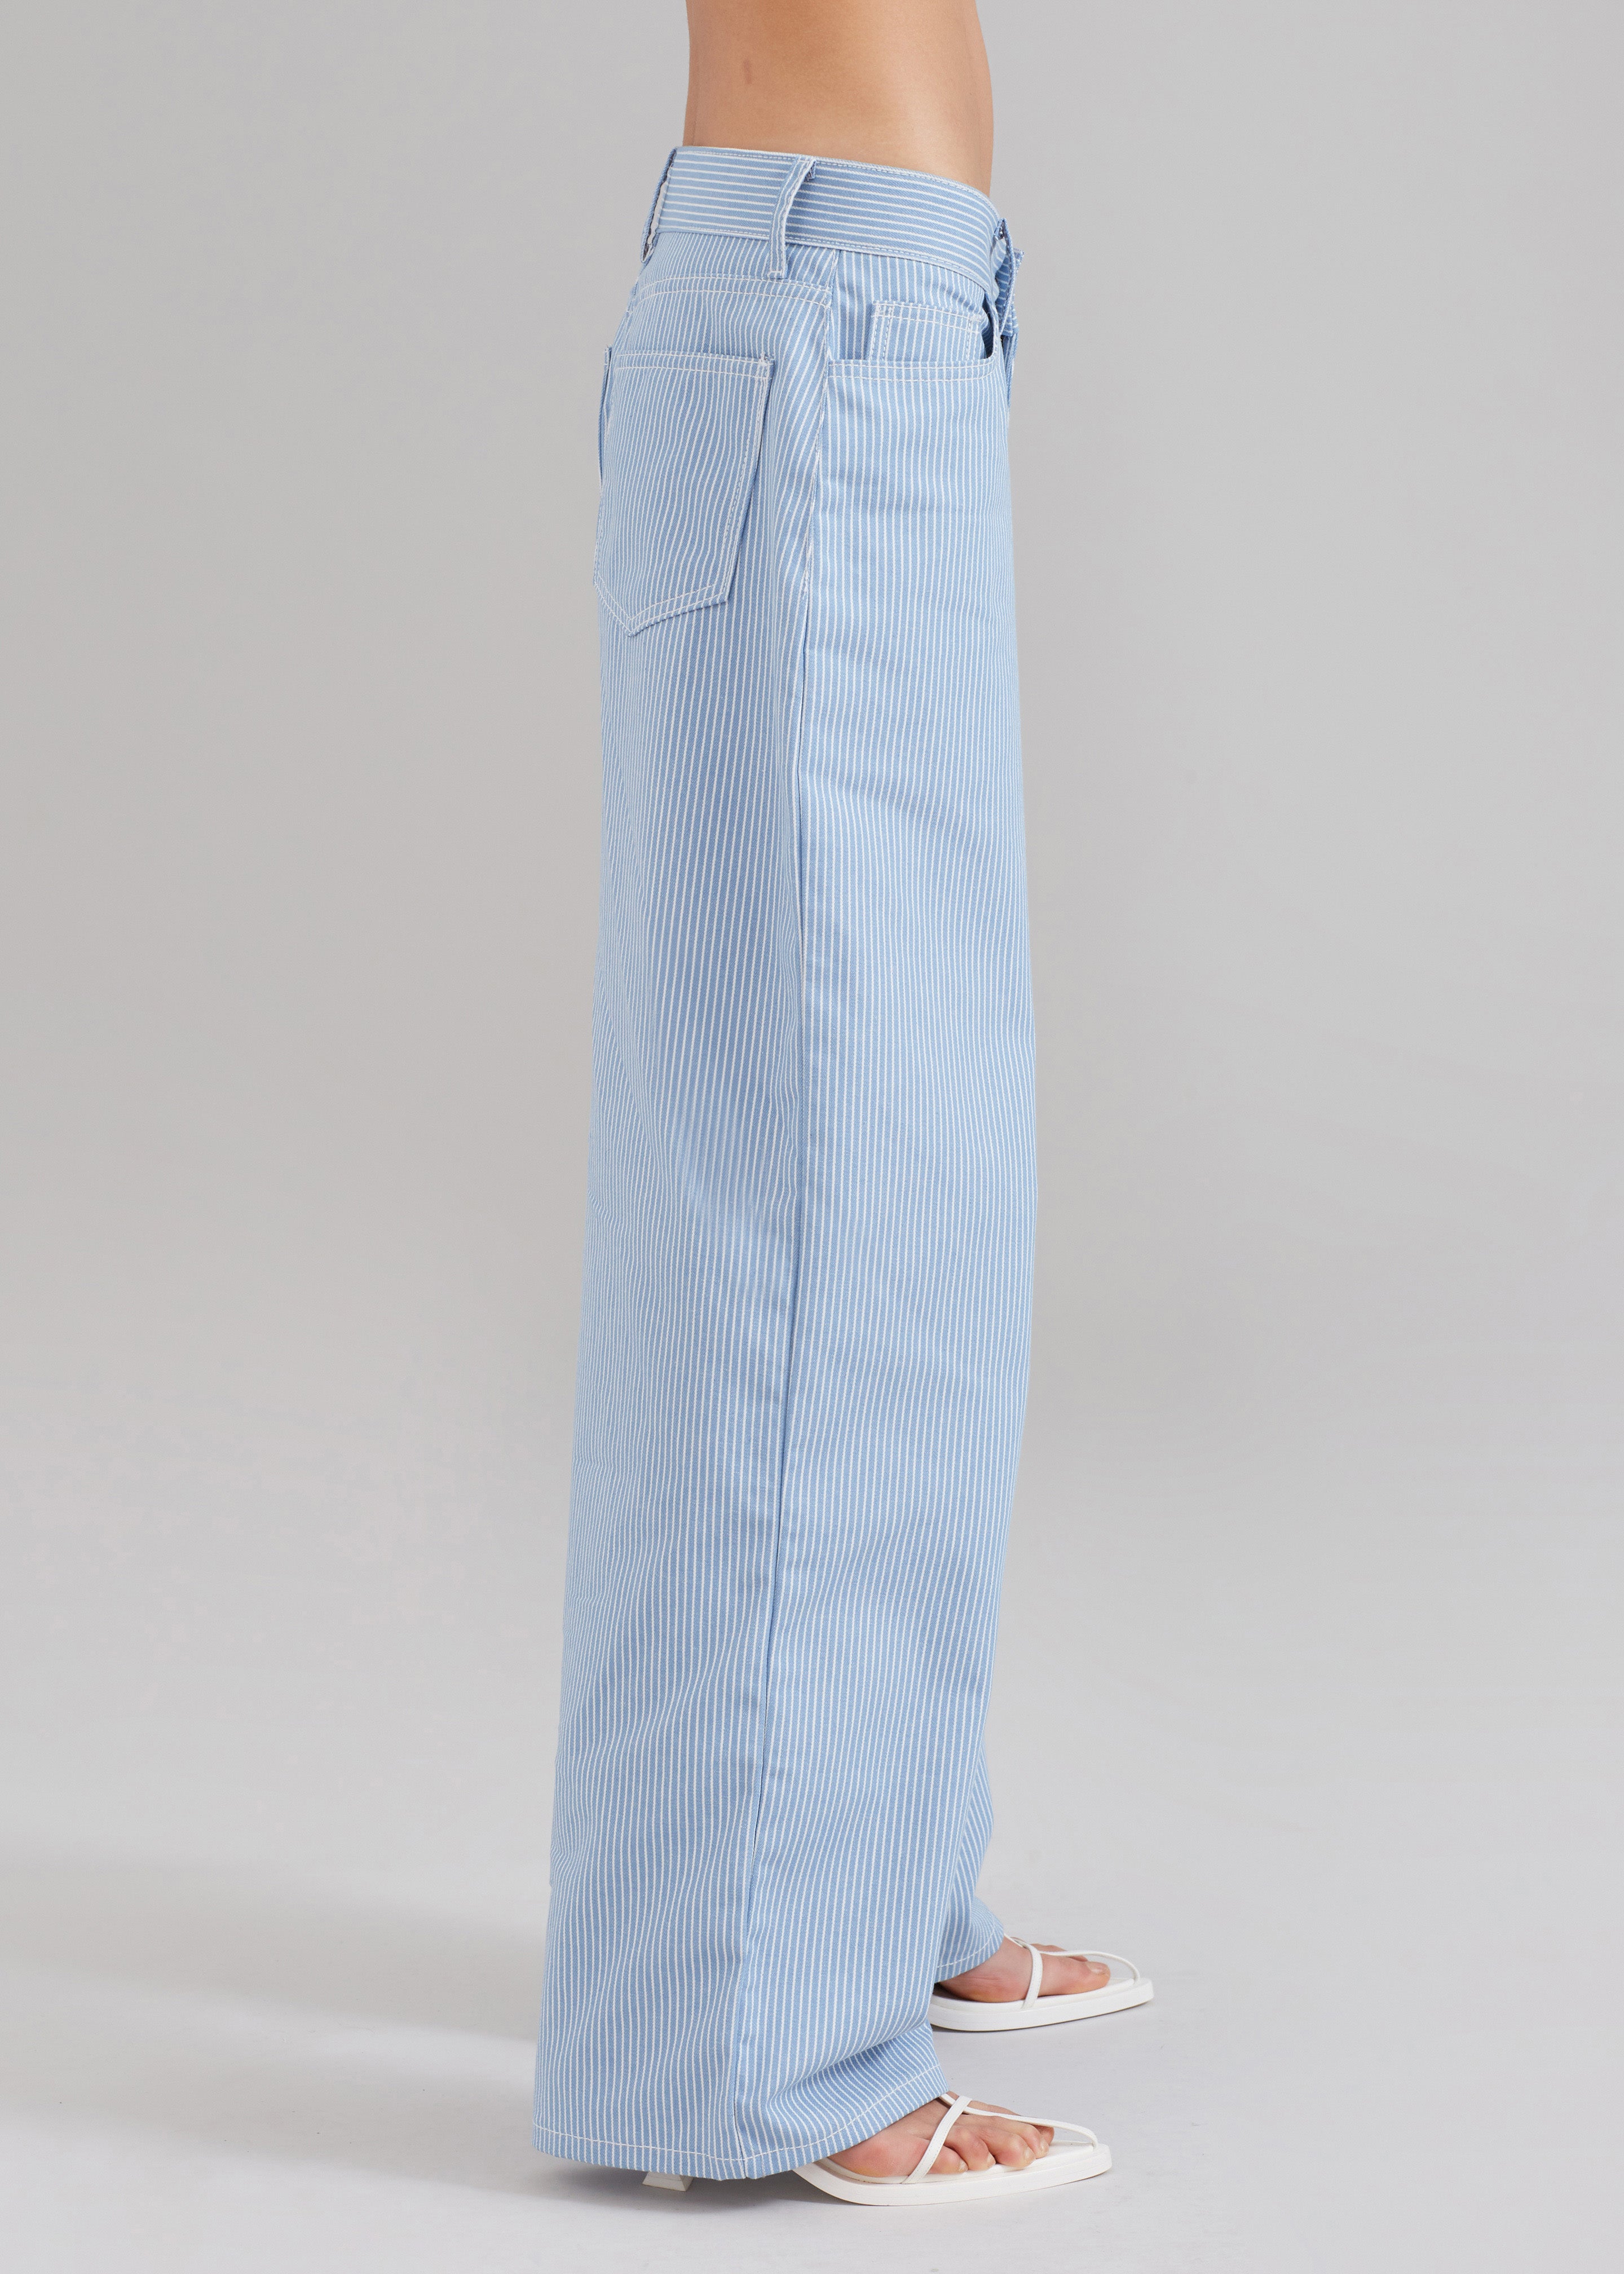 Light Blue Pants Pants - Shop Women's Pants